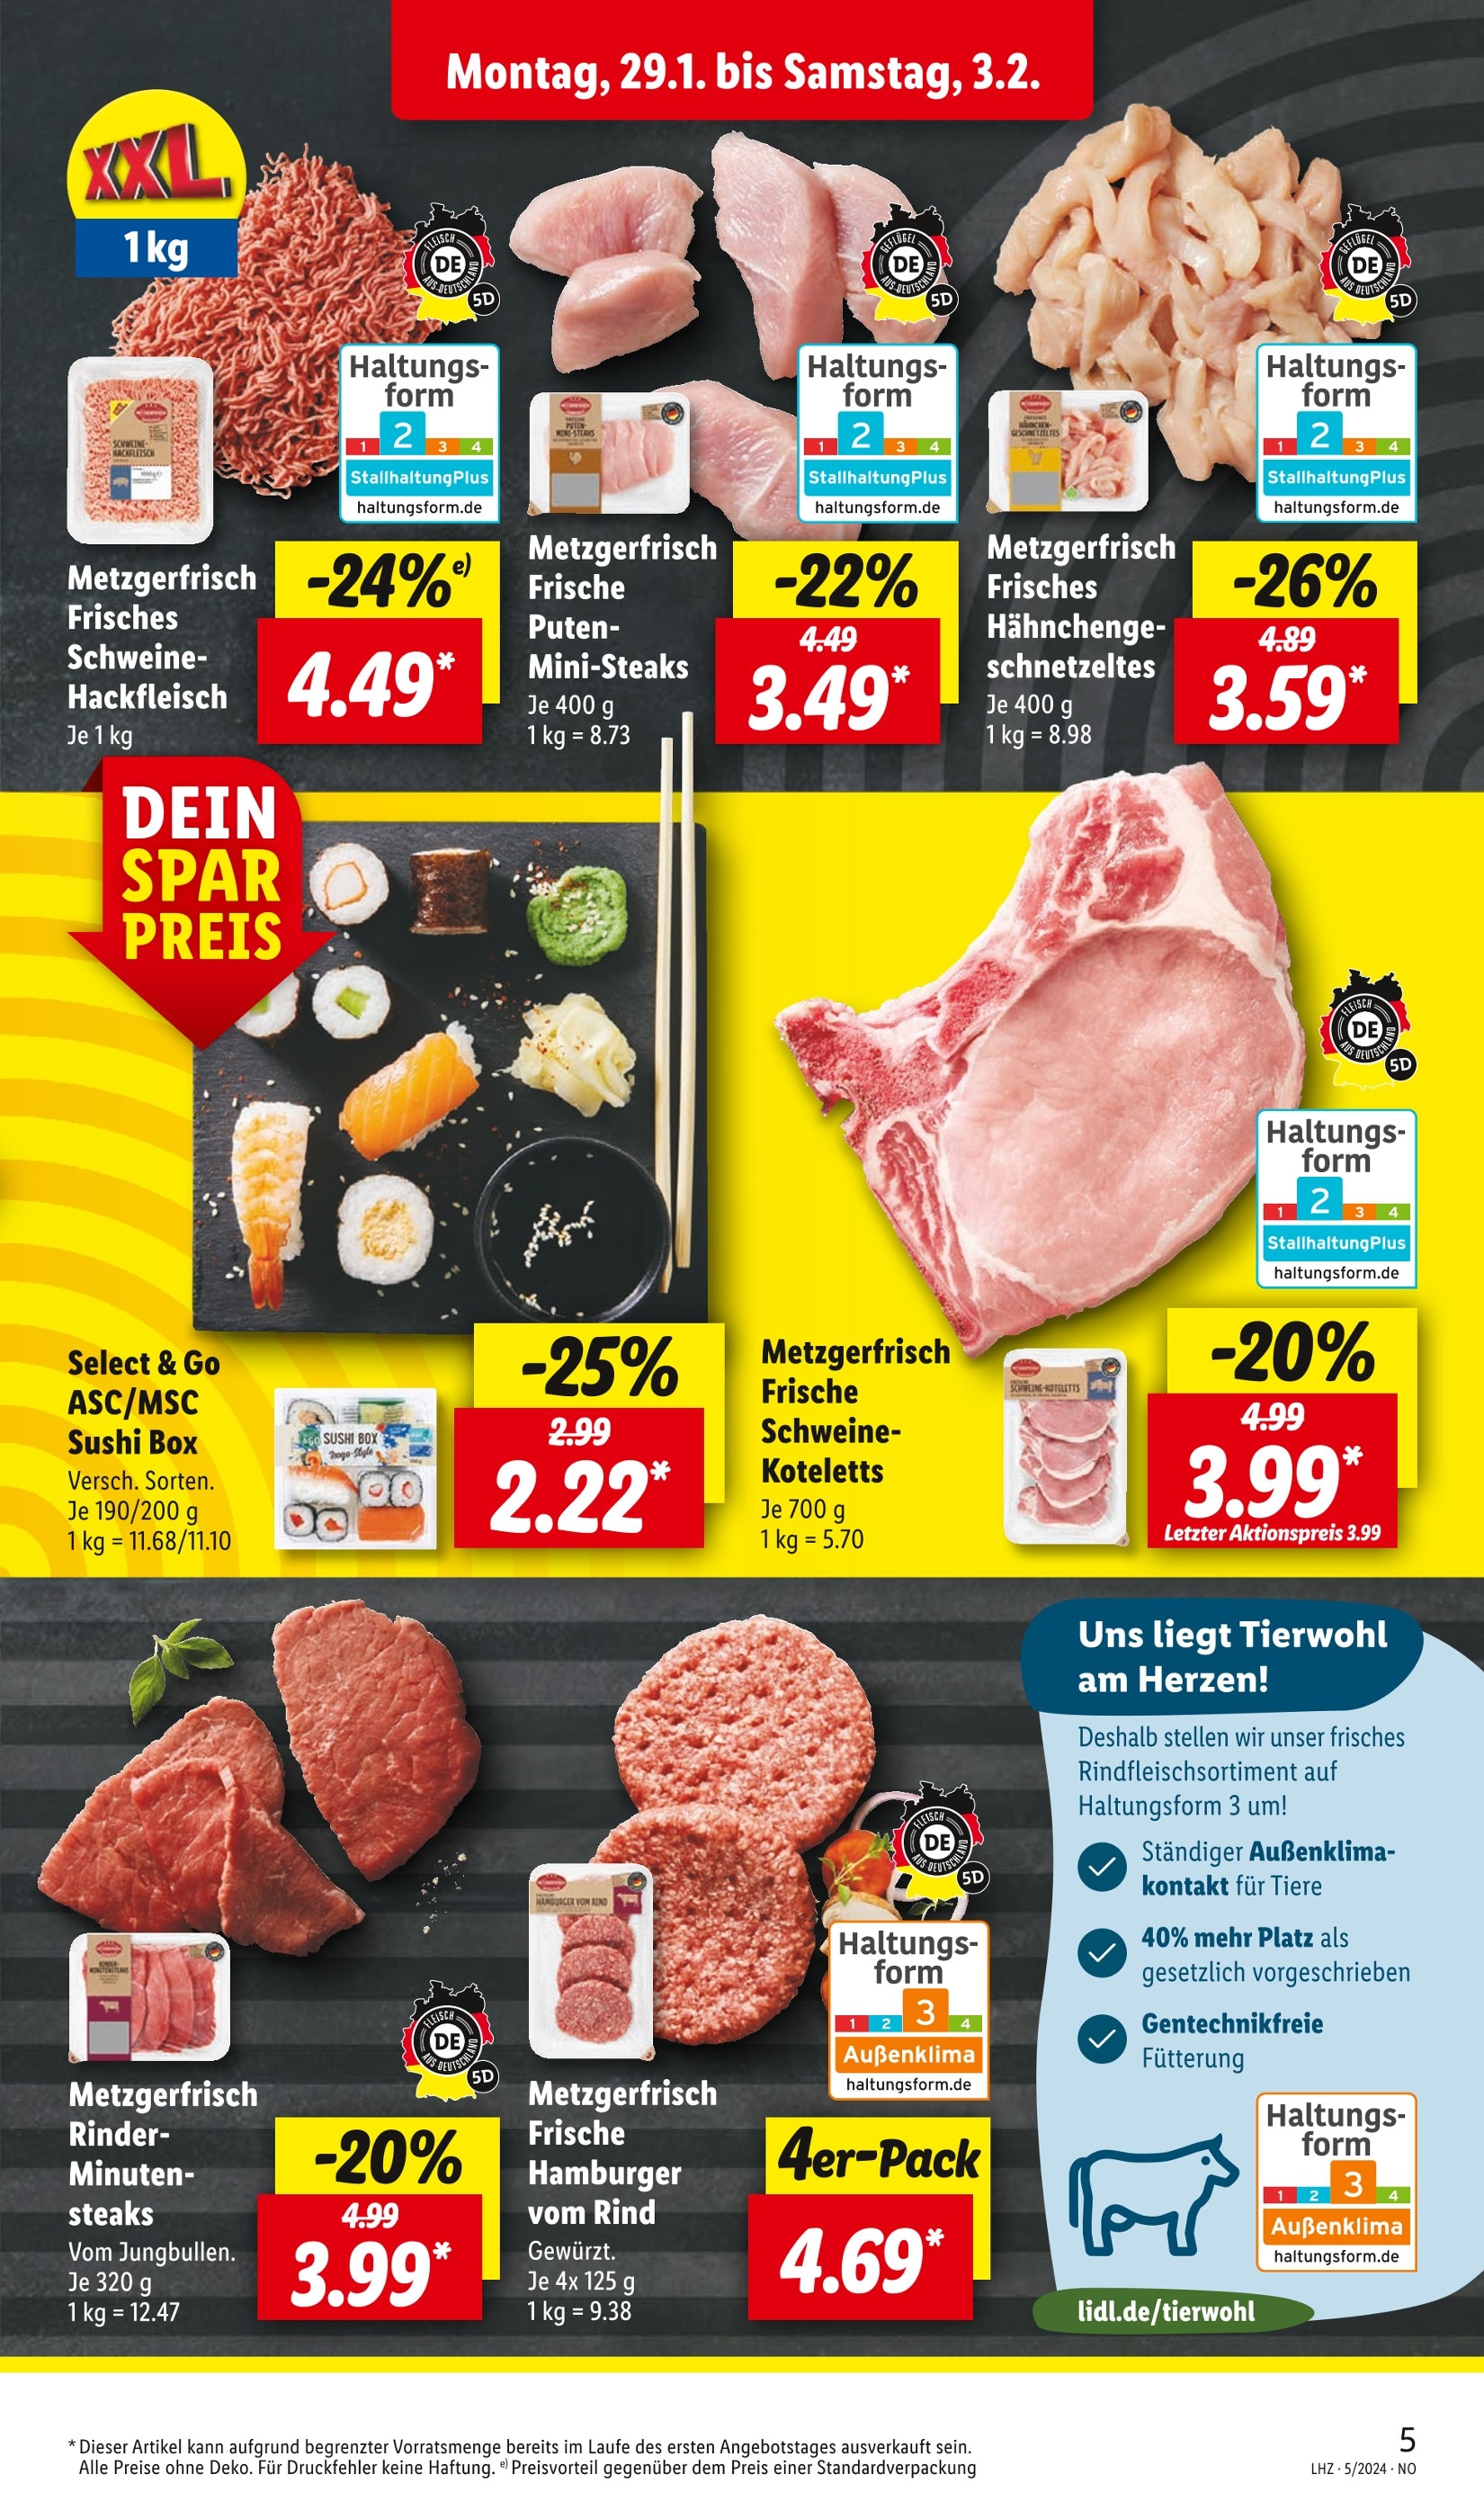 Steak Angebote in Braunschweig kaufen! - 🔥 günstig jetzt